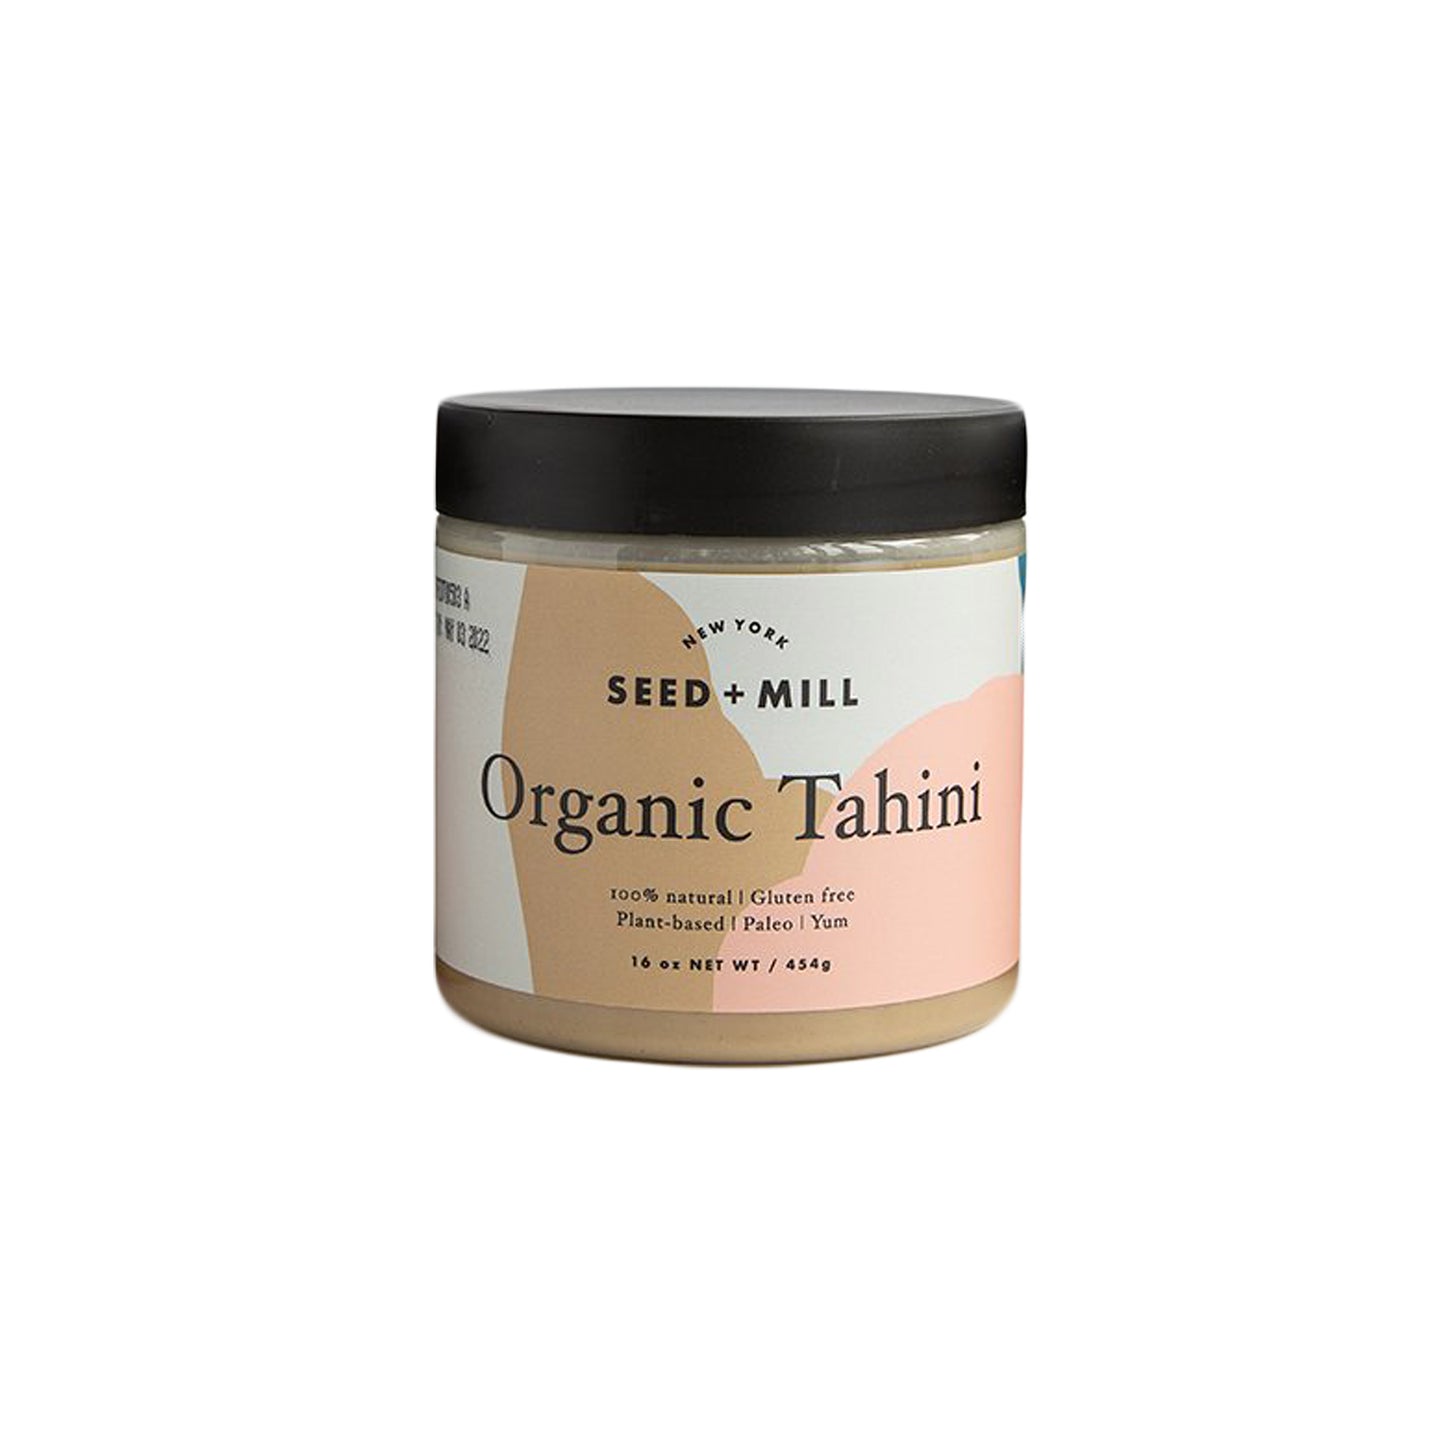 Seed + Mill Organic Tahini, 16 ounce